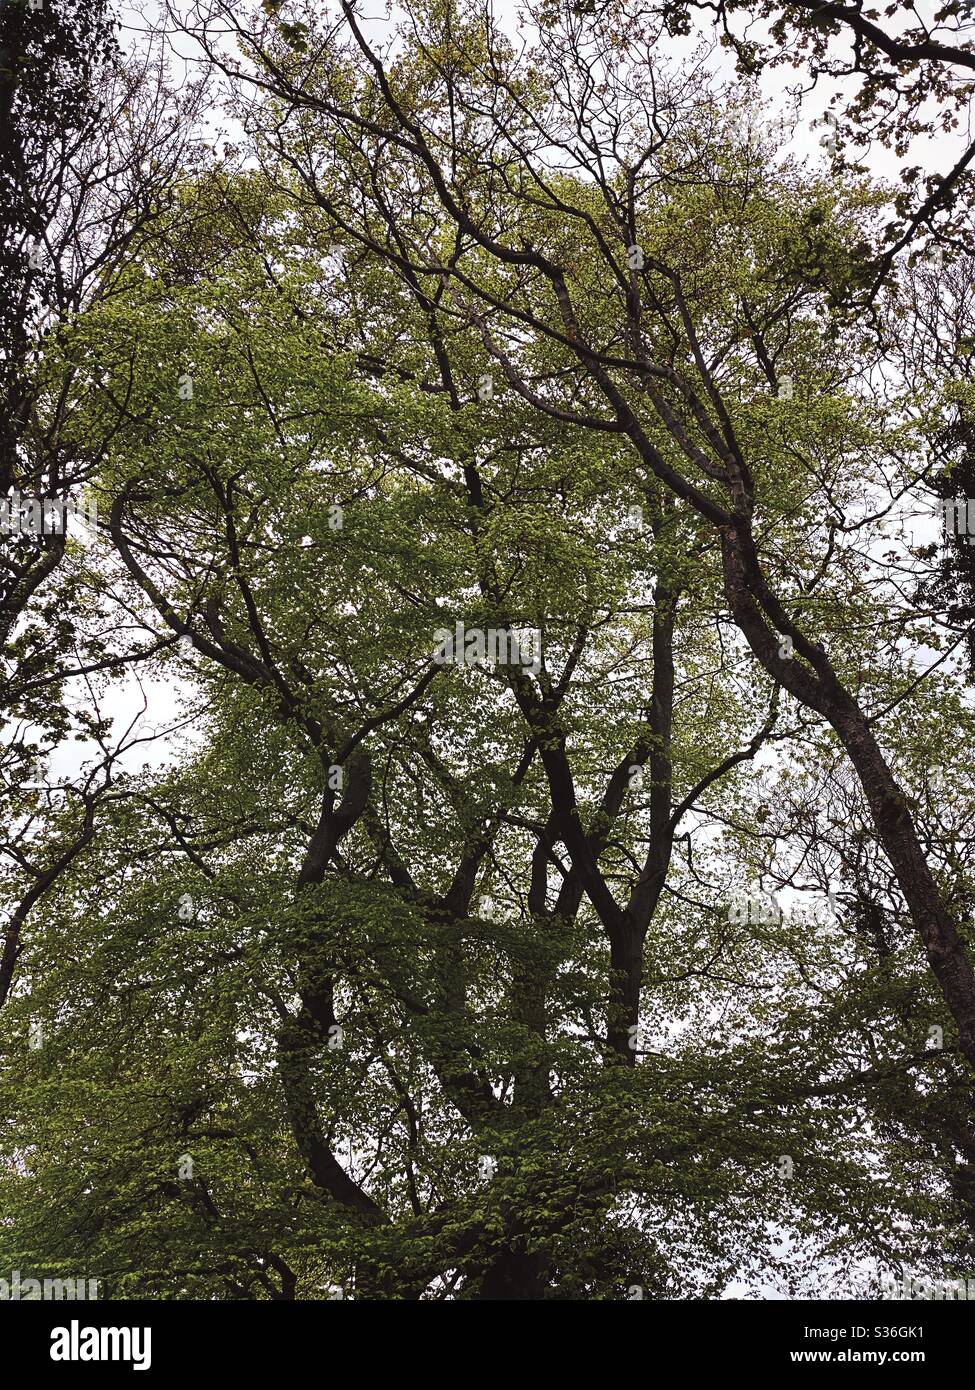 Niedrige Winkel Blick in einem ländlichen britischen Wald. Mit ominösen und abstrakten Baumstämmen, die Silhouetten mit krummen verdrehten Ästen erzeugen. Gespenstisch gespenstischer Wald Stockfoto